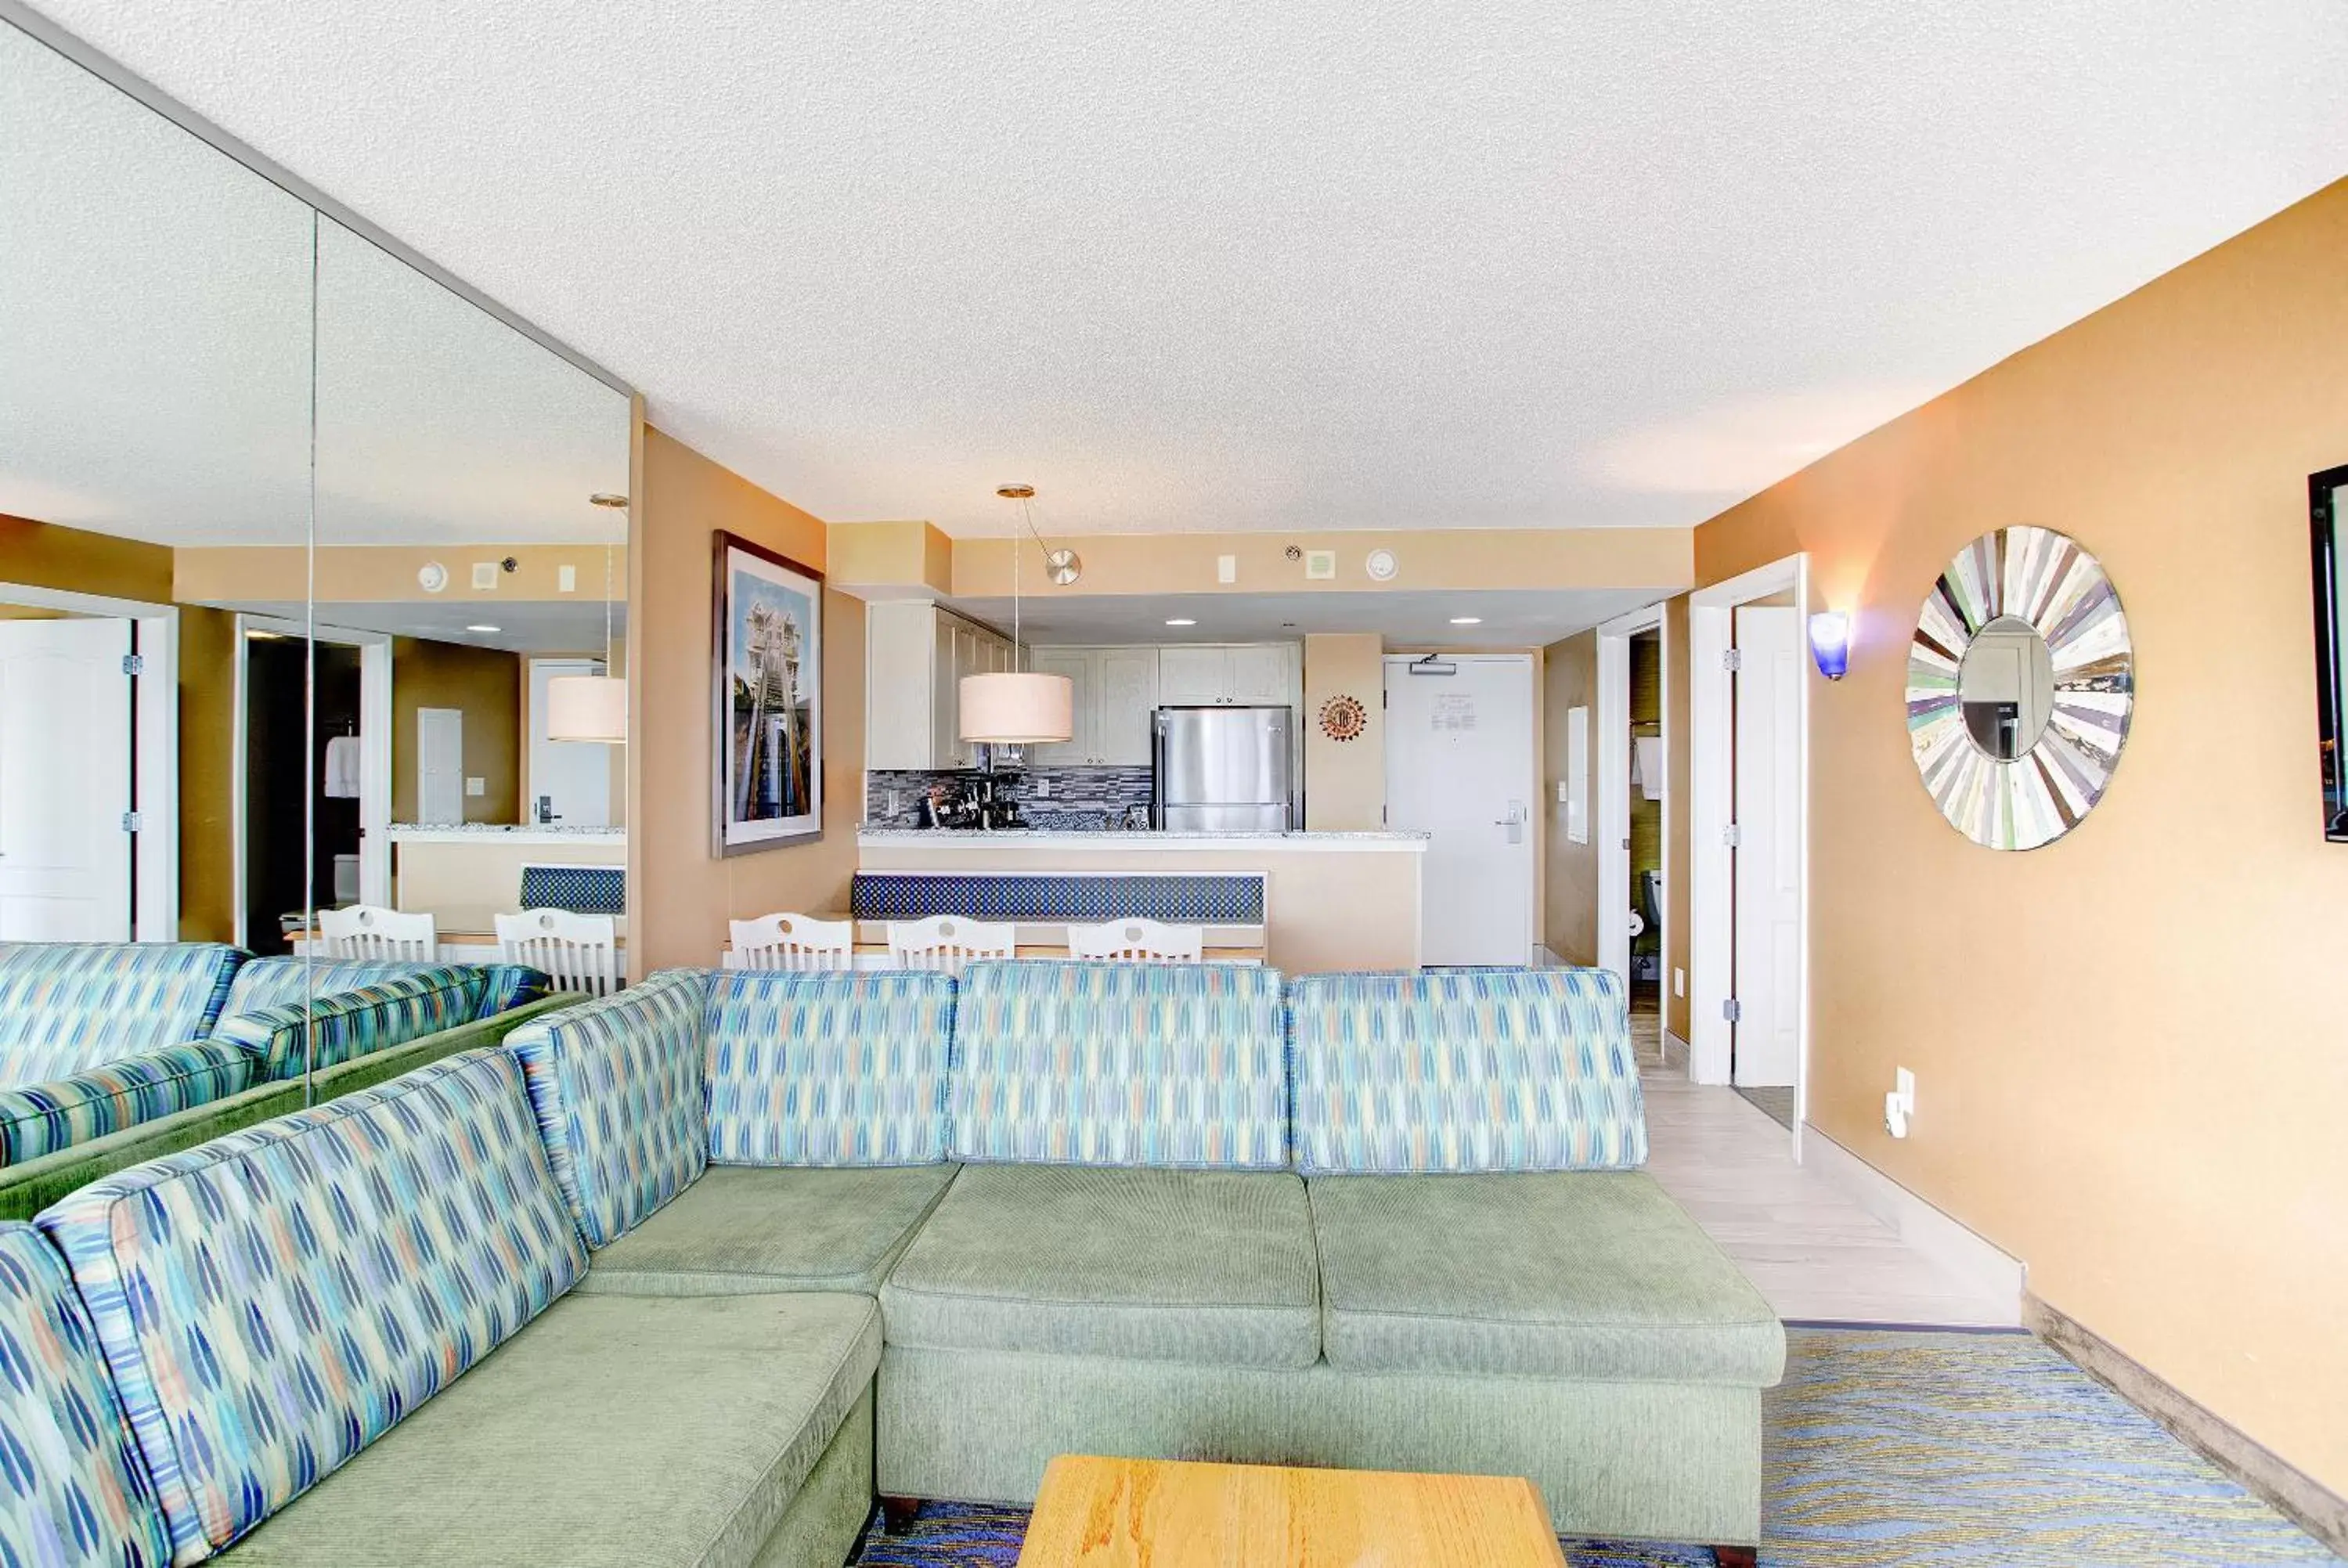 Living room, Banquet Facilities in Boardwalk Resort and Villas